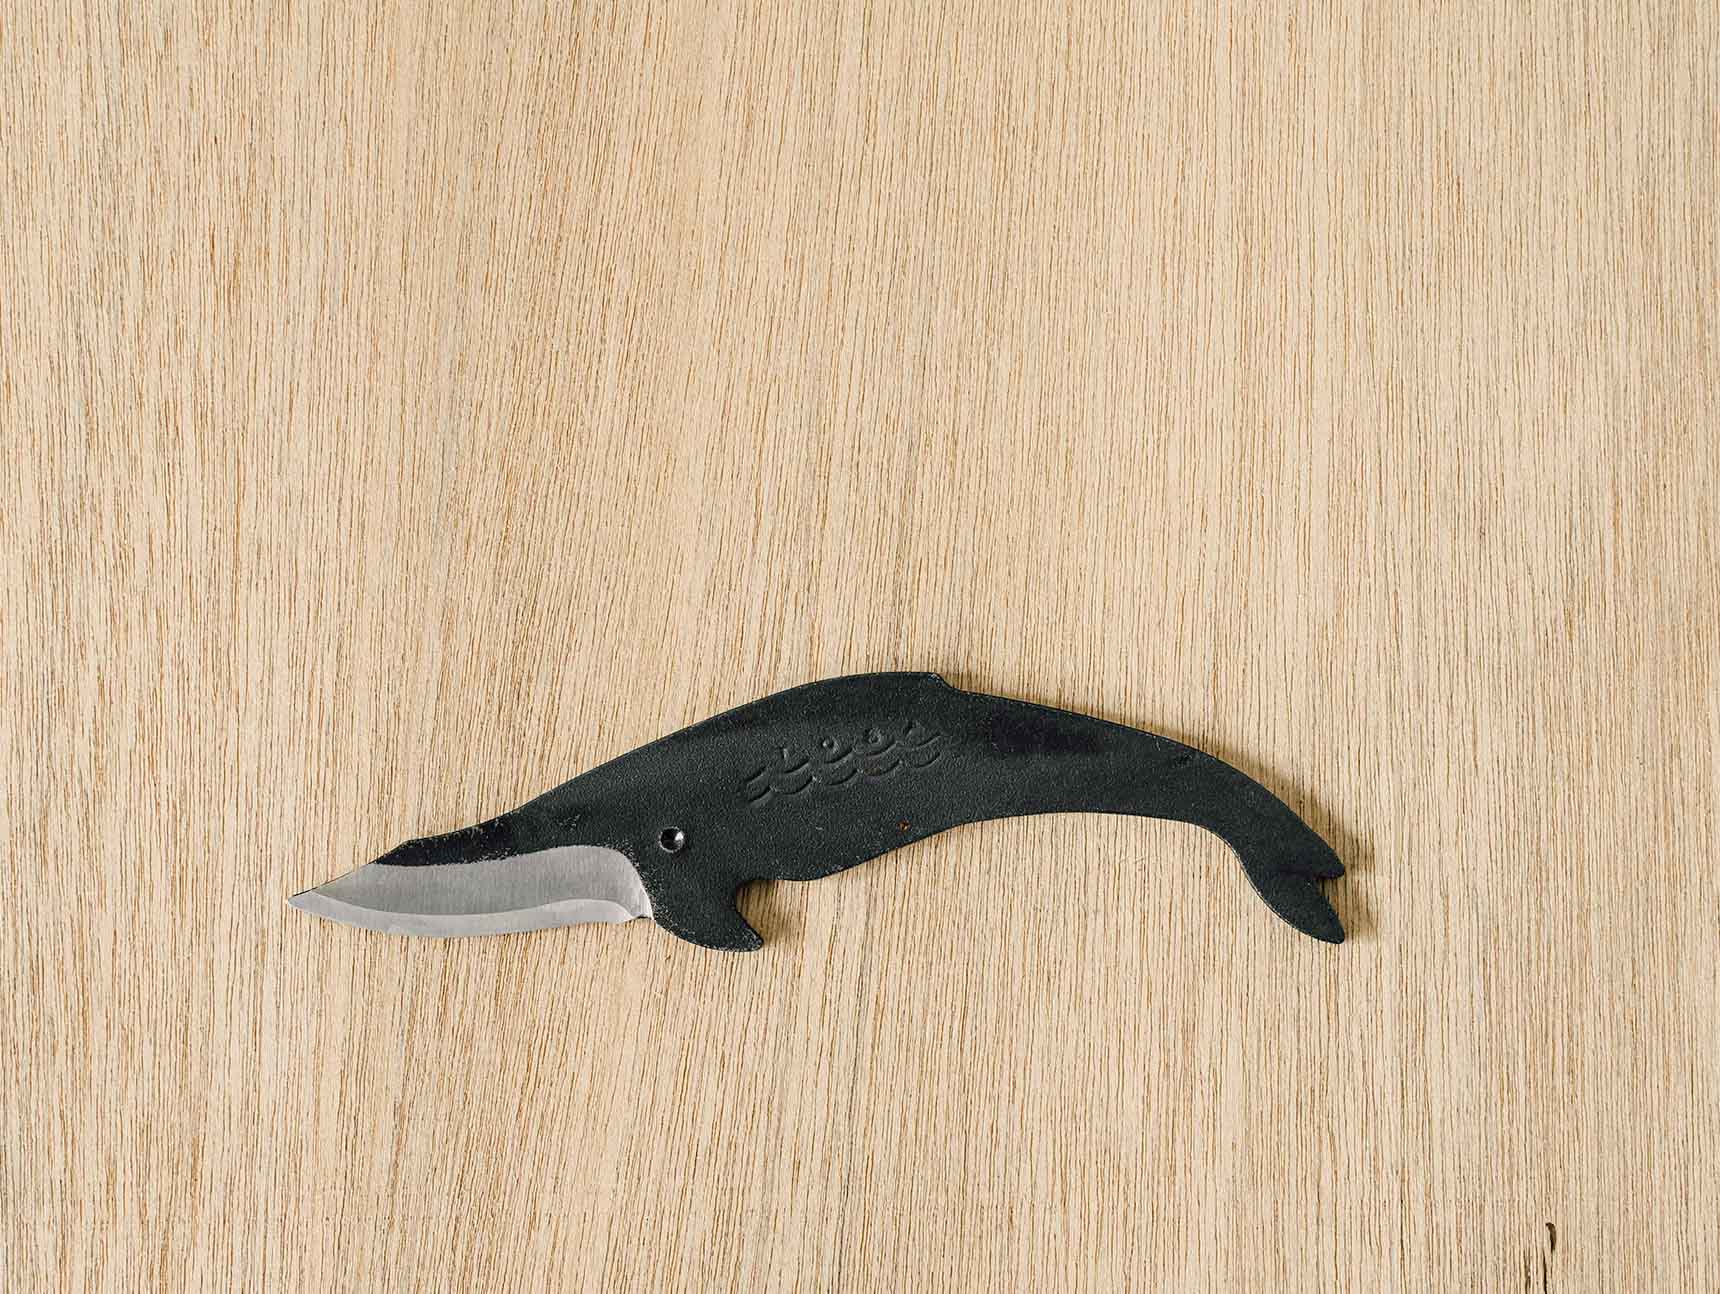 Tosa Knives - Minke Whale Knife Female (C)